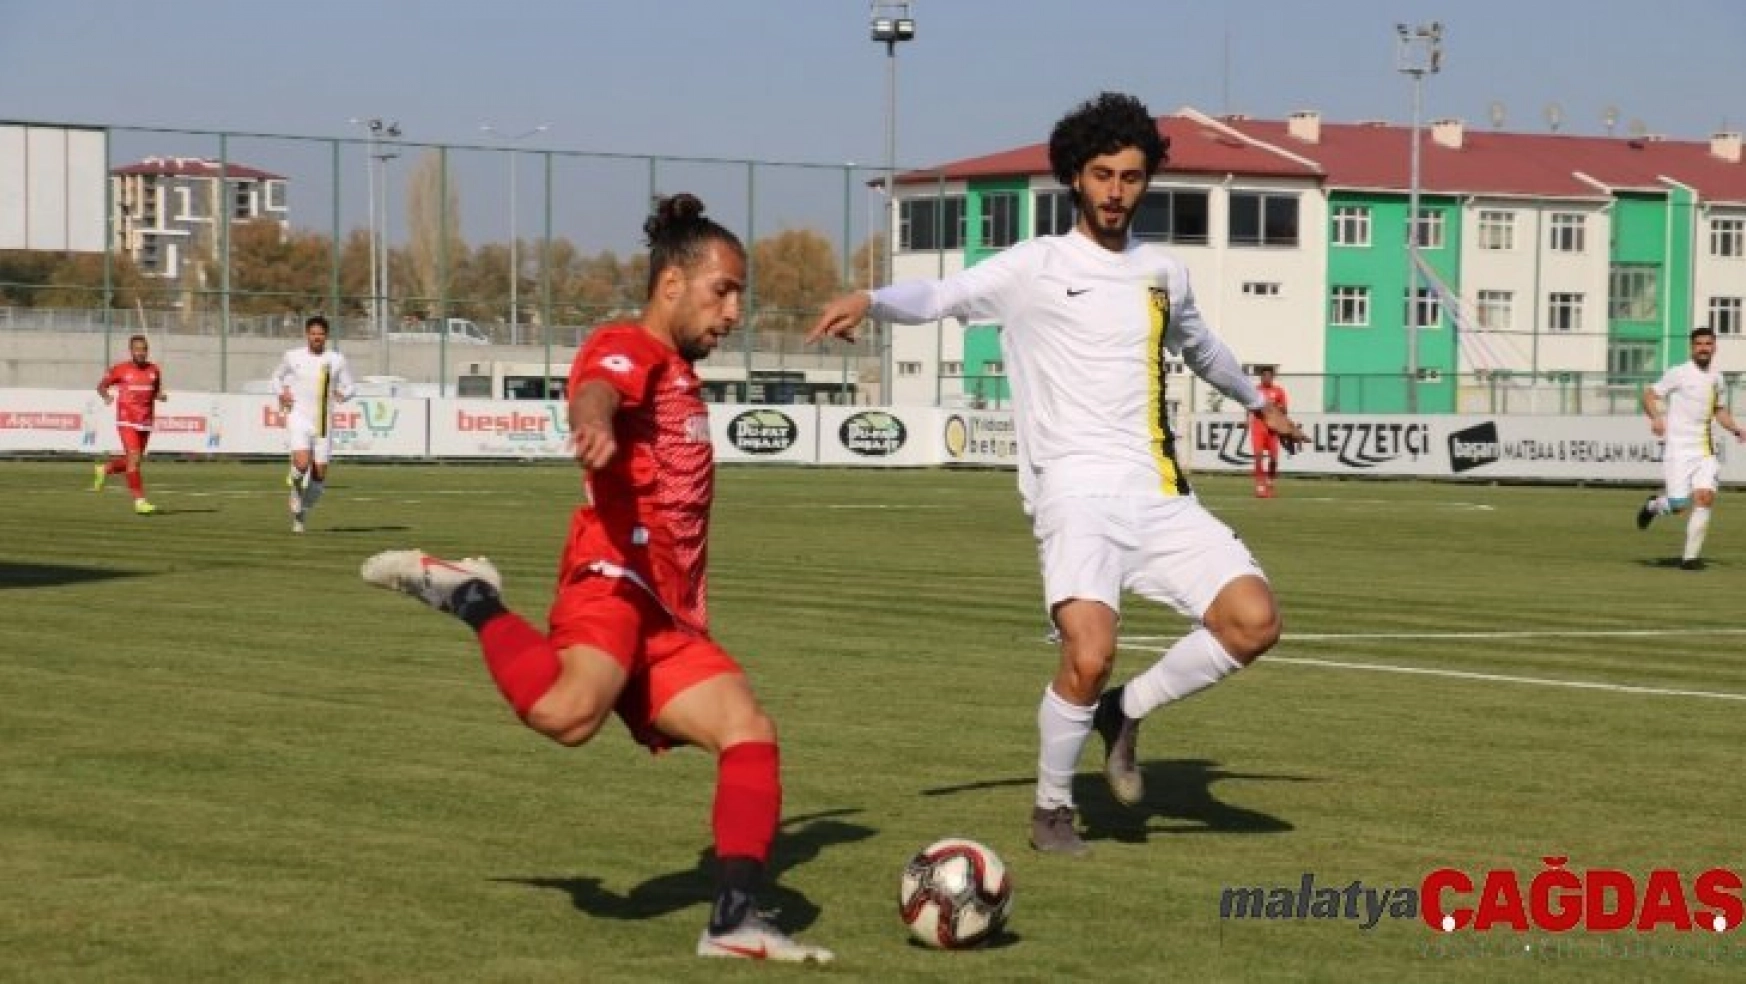 TFF 2. Lig: Sivas Belediyespor: 0 - Bayburt Özel İdare: 2